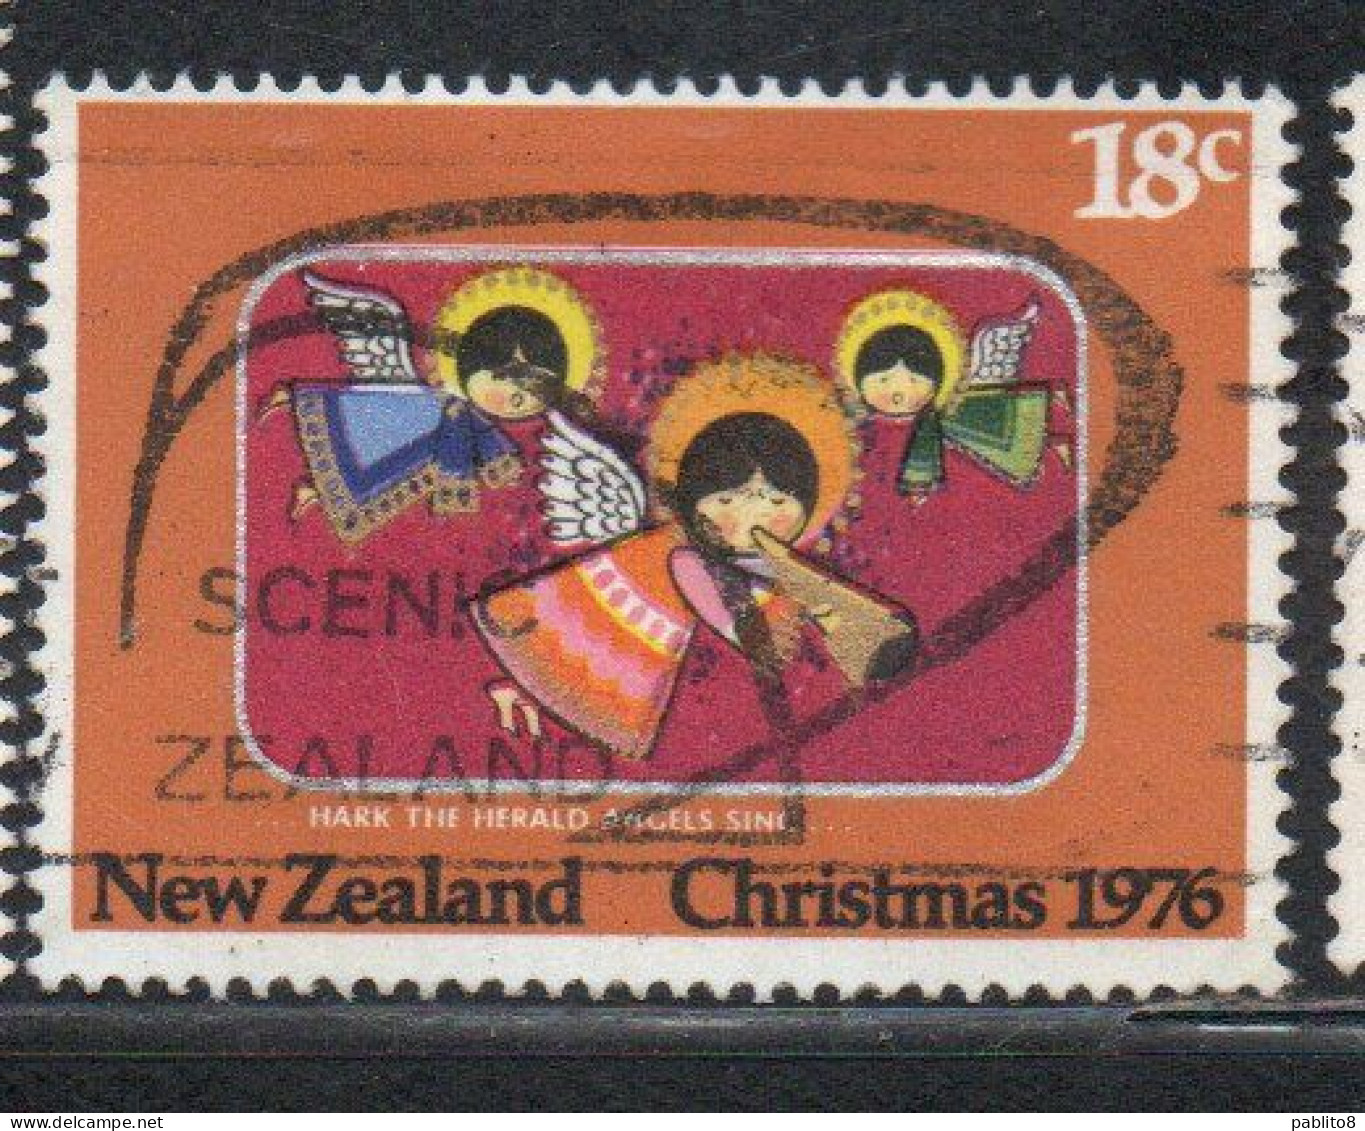 NEW ZEALAND NUOVA ZELANDA 1976 HARK THE HERALD ANGELS SING CHRISTMAS NATALE NOEL WEIHNACHTEN NAVIDAD 18c USED - Used Stamps